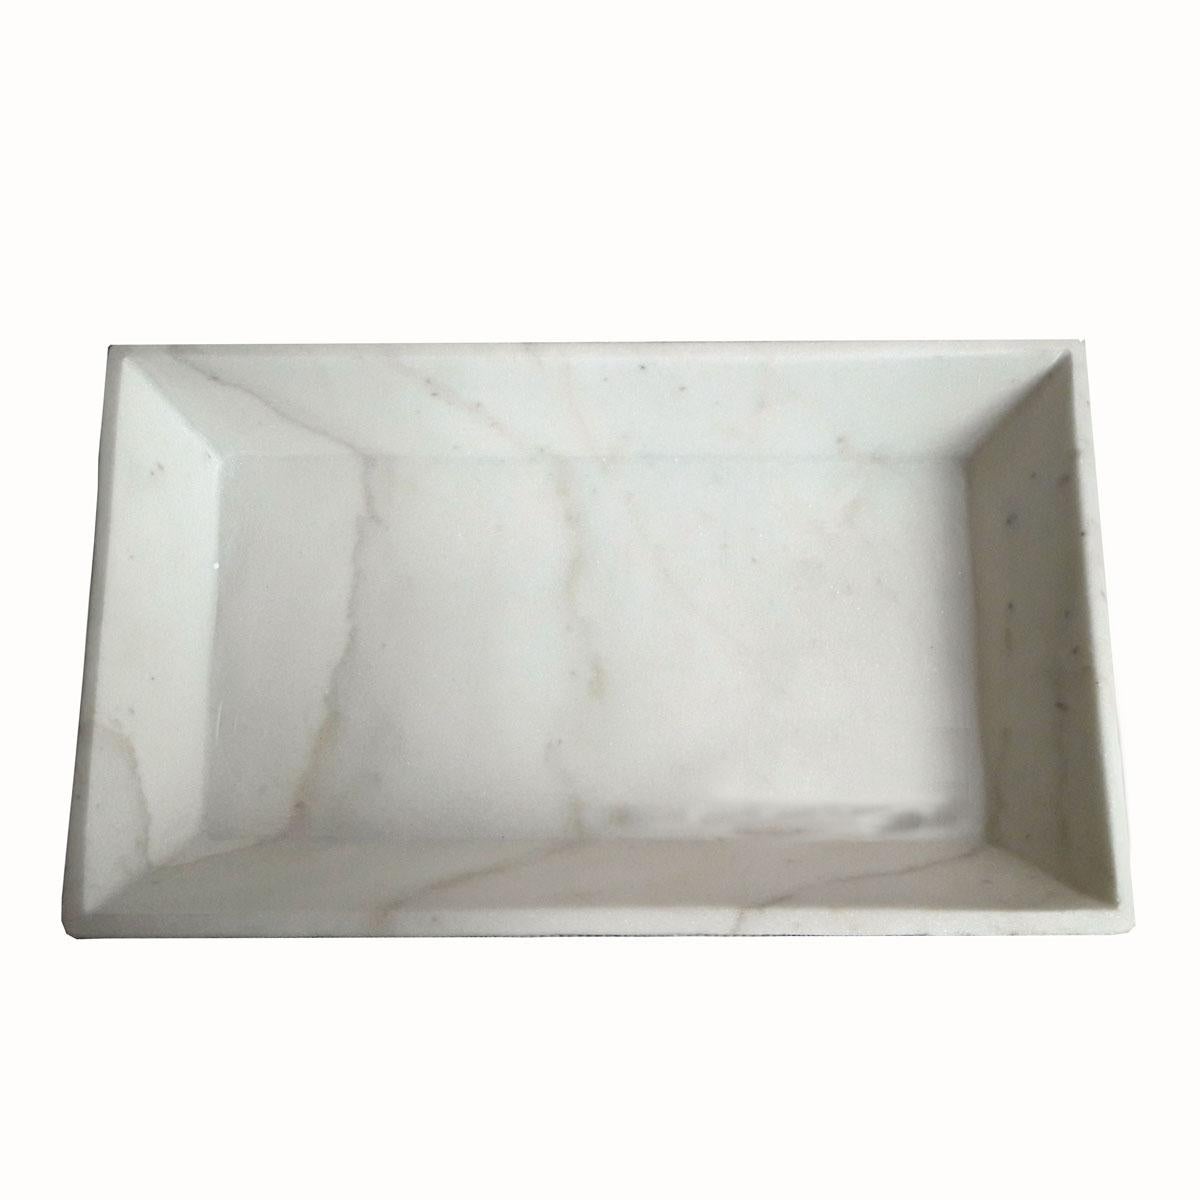 Ein weißes Marmortablett aus Indien mit abgeschrägten Seiten. Dieses schlichte und elegante kleine Tablett eignet sich ideal als Accessoire-Tablett für den Waschtisch im Schlafzimmer, als Handtuchhalter im Badezimmer oder als dekoratives Element in